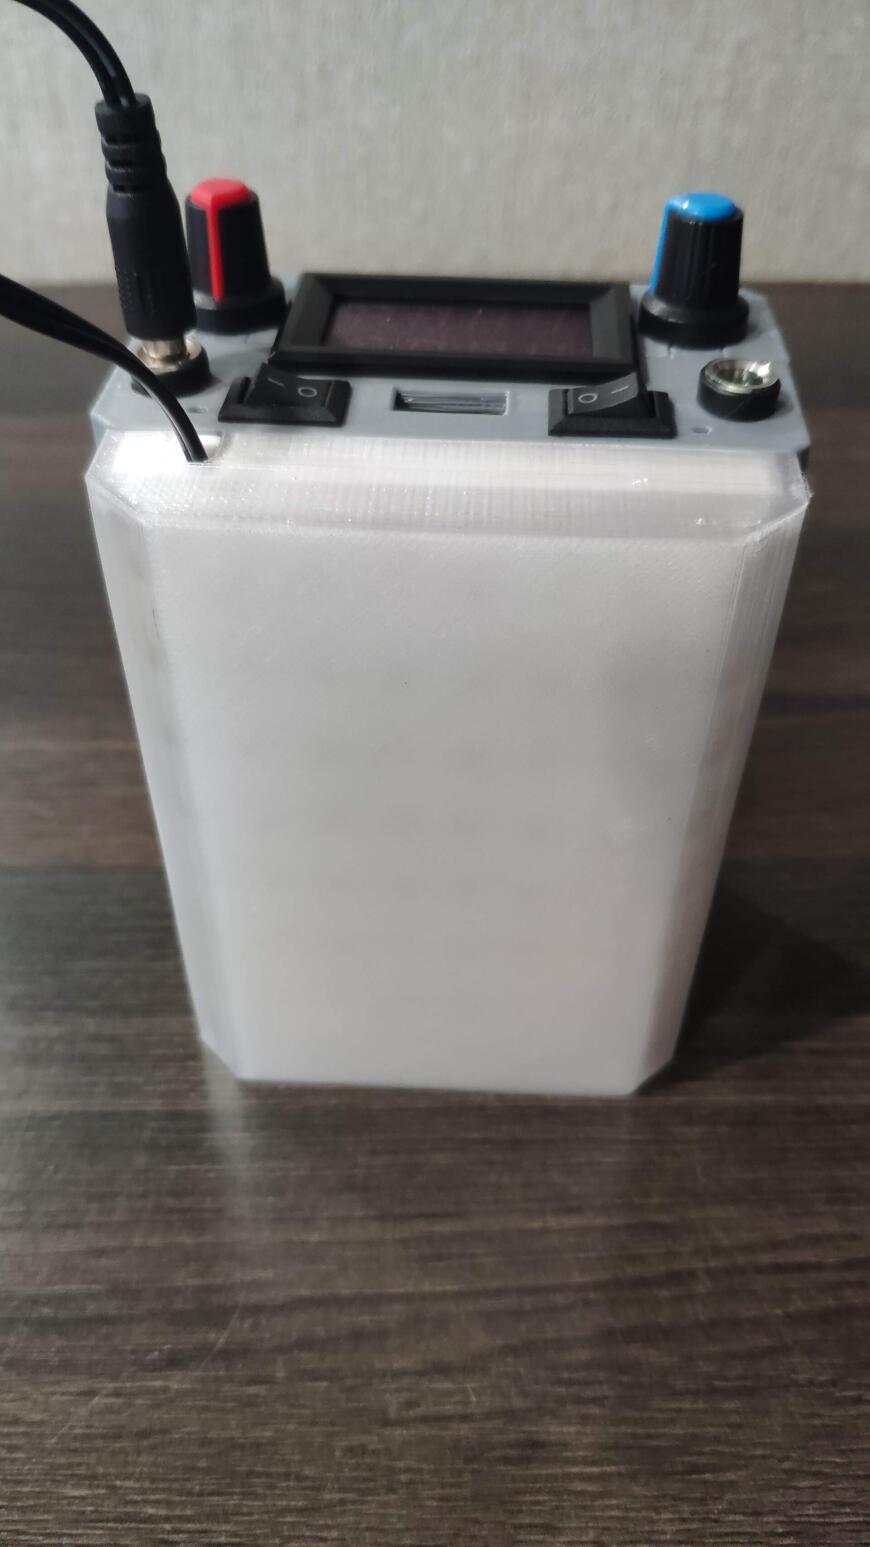 Автономный блок питания на аккумуляторах 18650 с QC3.0 и LED